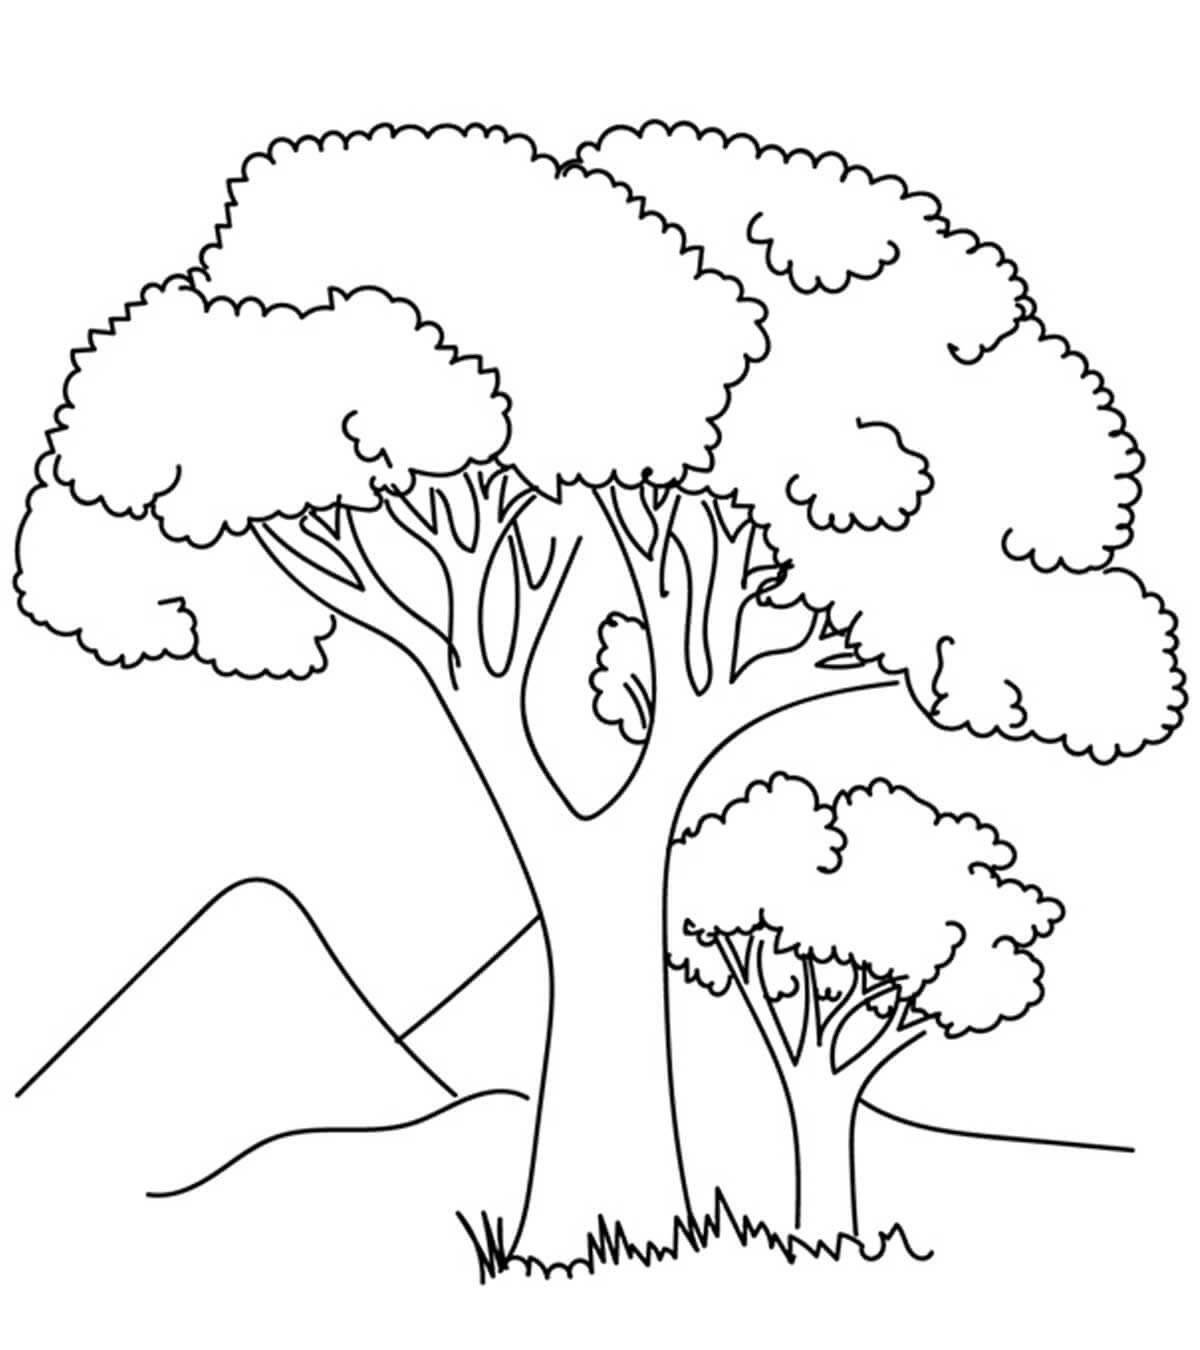 Цветной рисунок дерева для детей